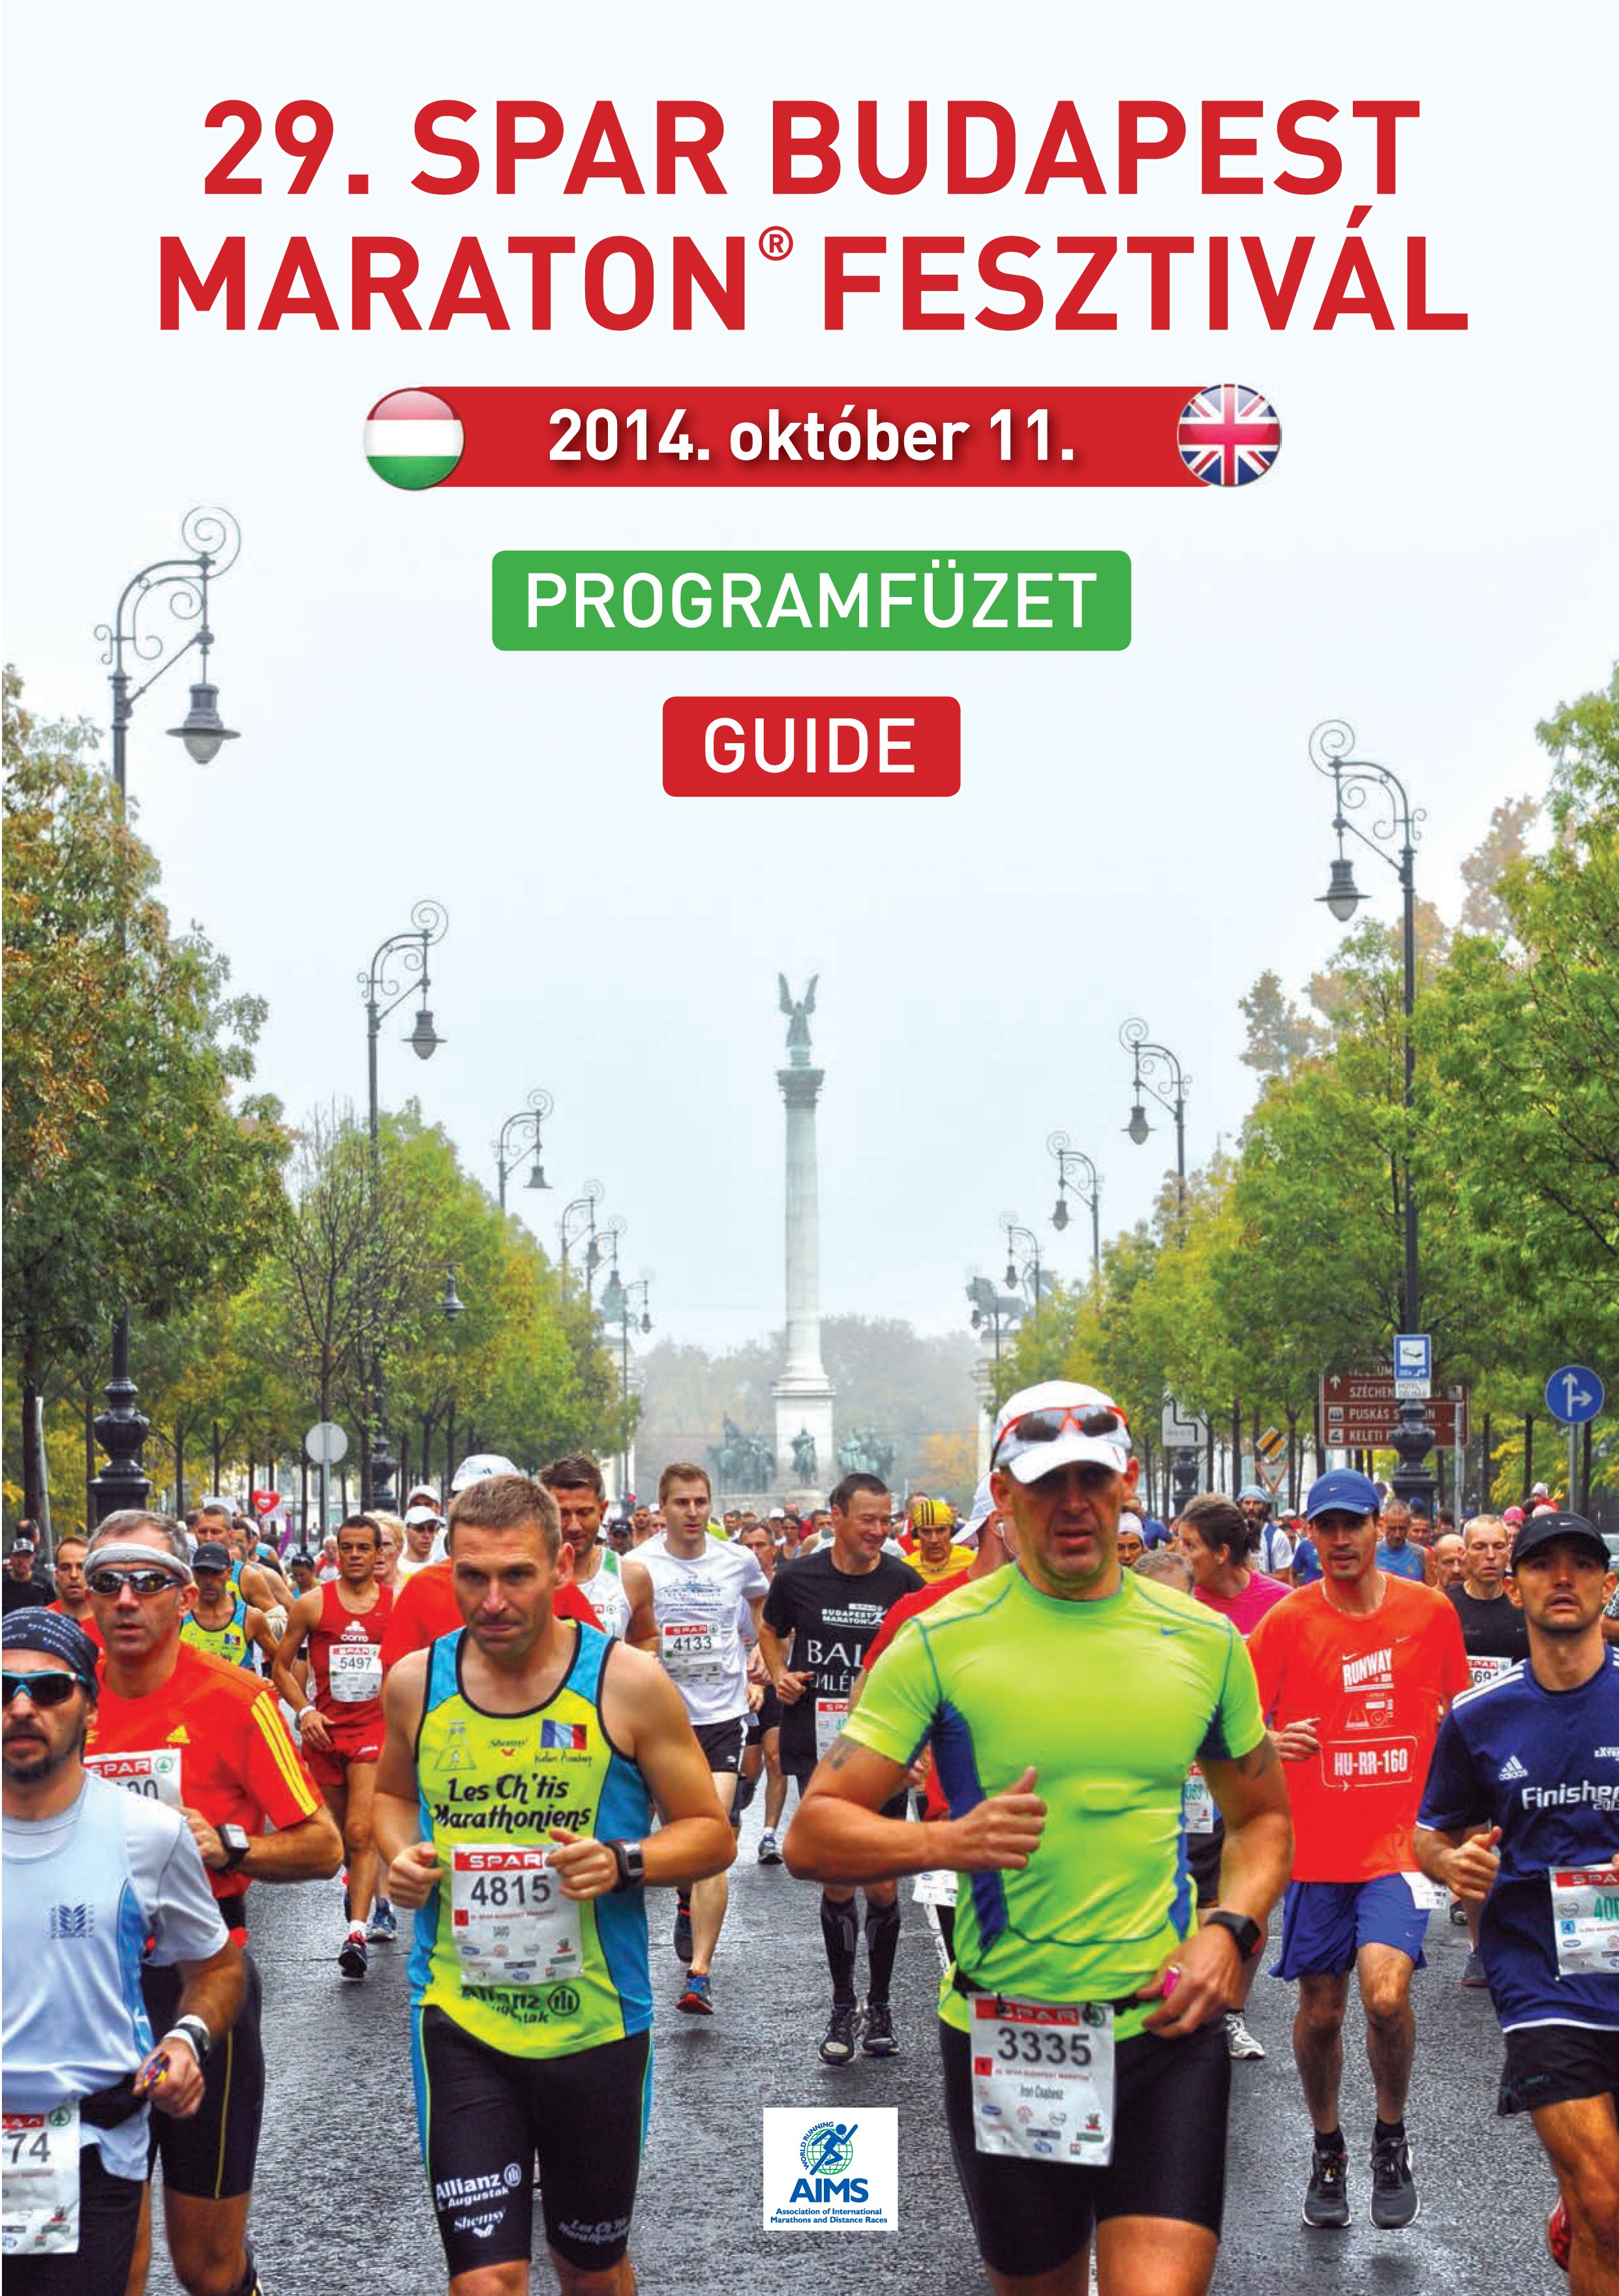 Lapozgasd a neten a 29. SPAR Budapest Maraton® Fesztivál teljes programfüzetét!